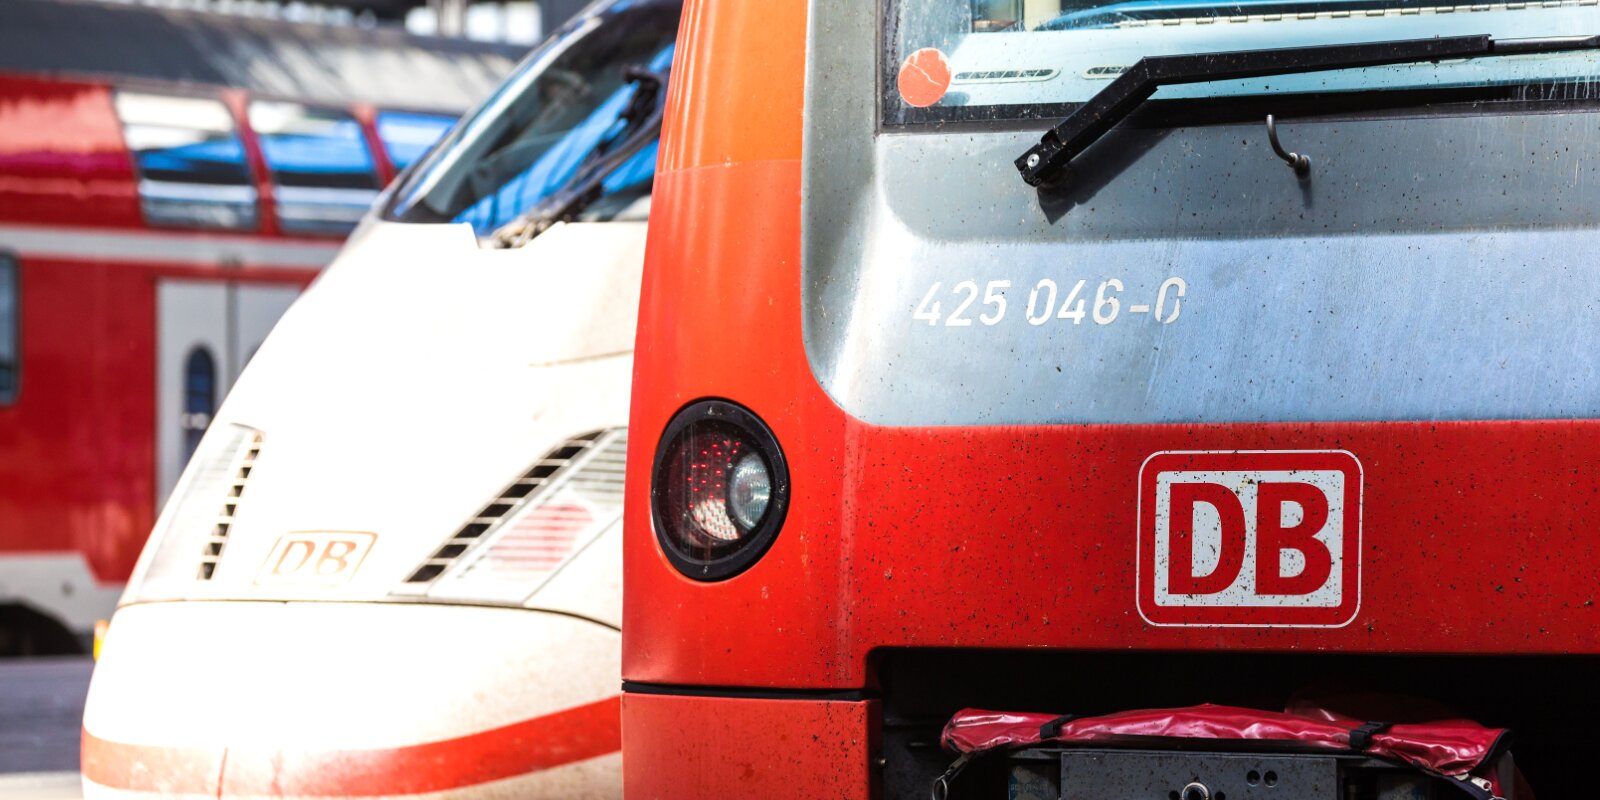 D'Laangstreckeverbindunge bei der Deutsche Bahn musse vun haut u gebucht ginn | © picture alliance / pressefoto_korb | Micha Korb